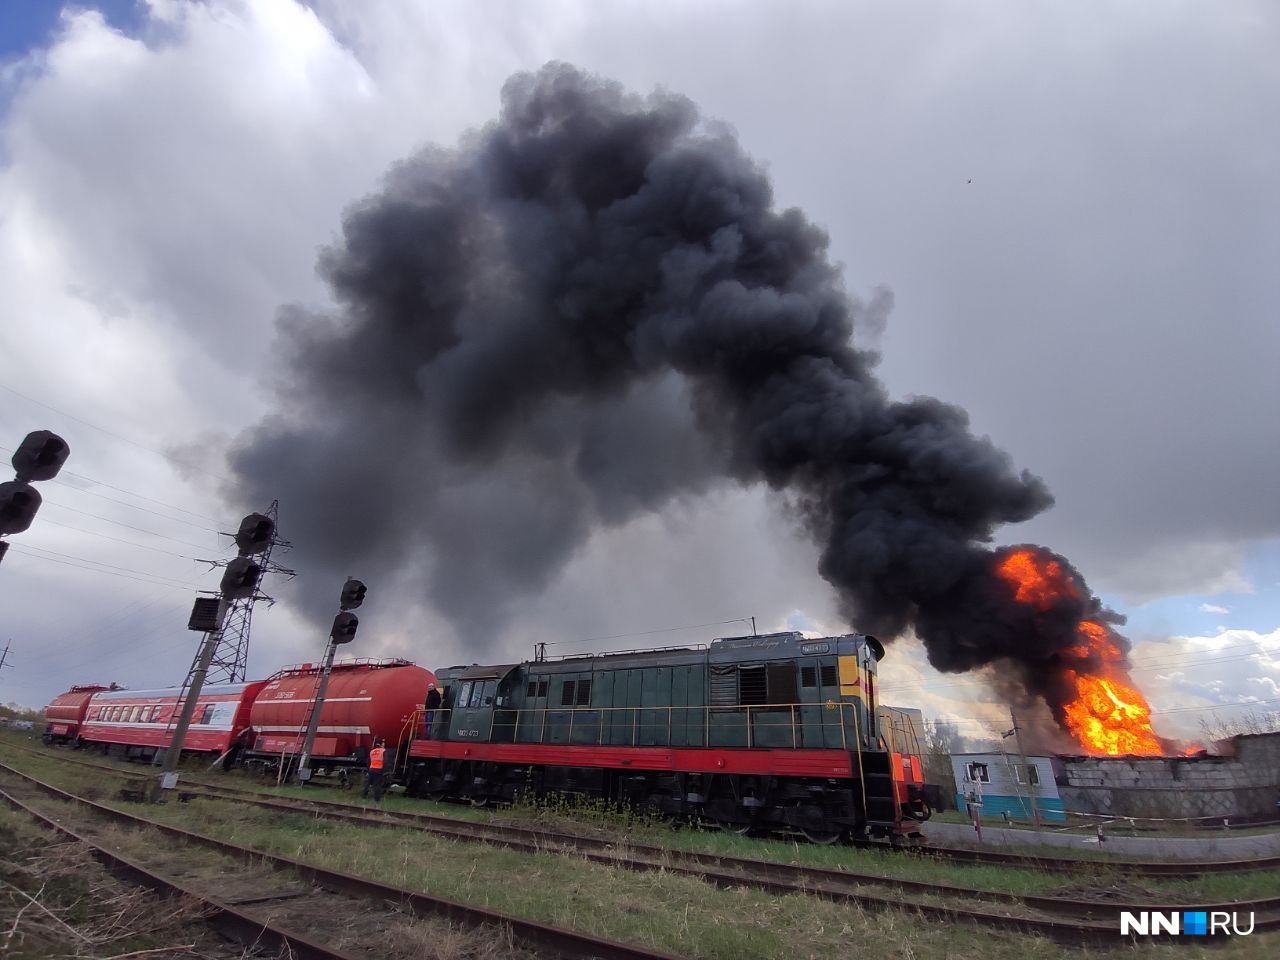 Крупный пожар произошел в Дзержинске. Видео NN.RU с места событий